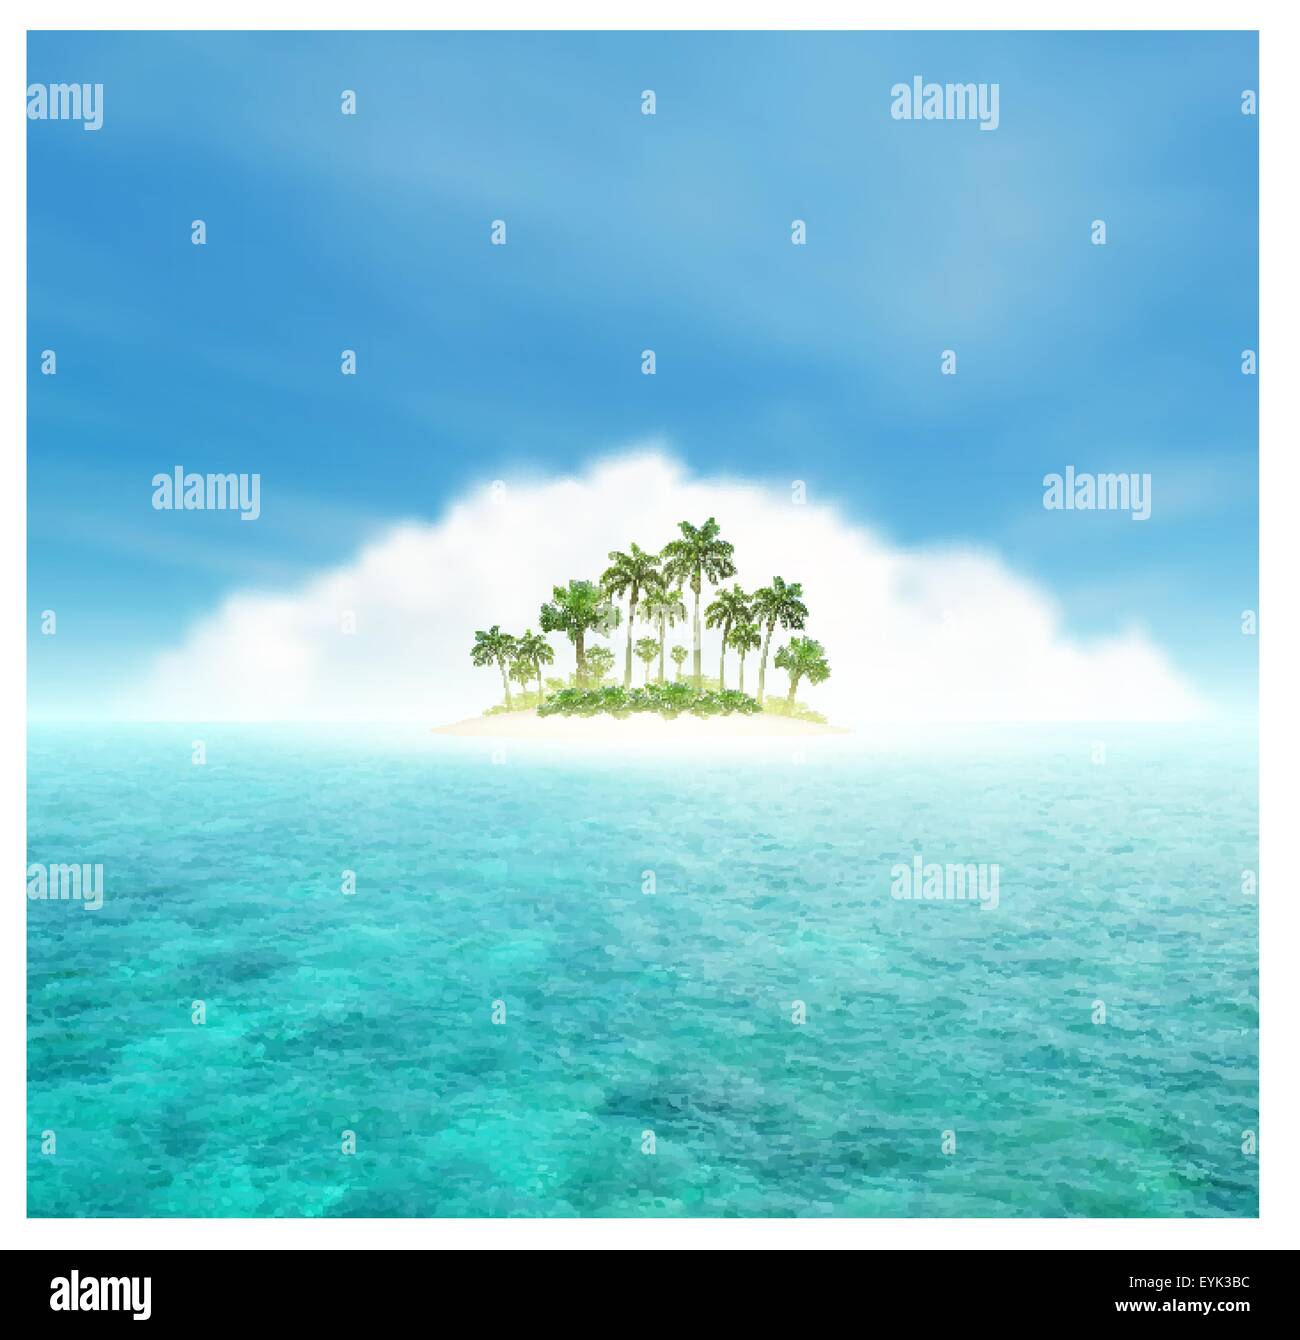 Ciel, nuage, océan et île tropicale avec palmiers Illustration de Vecteur